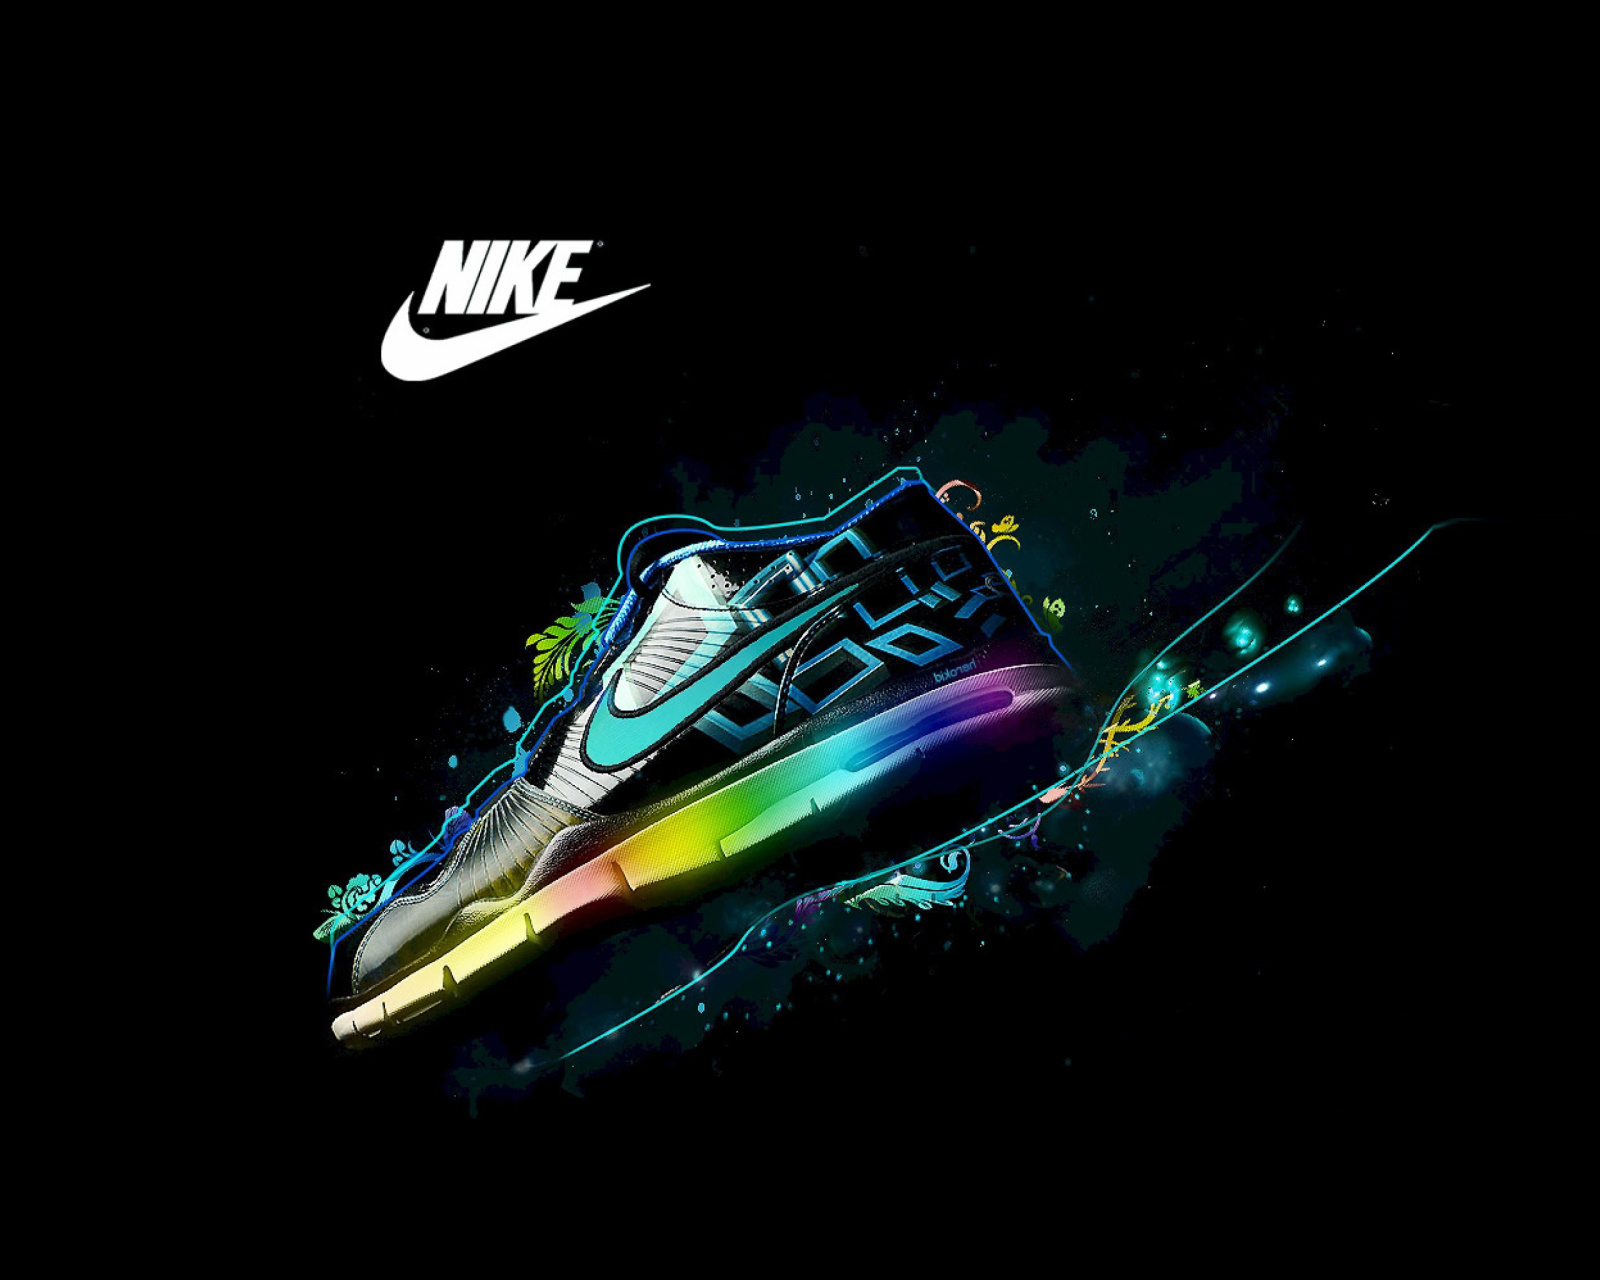 Das Nike Logo and Nike Air Shoes Wallpaper 1600x1280